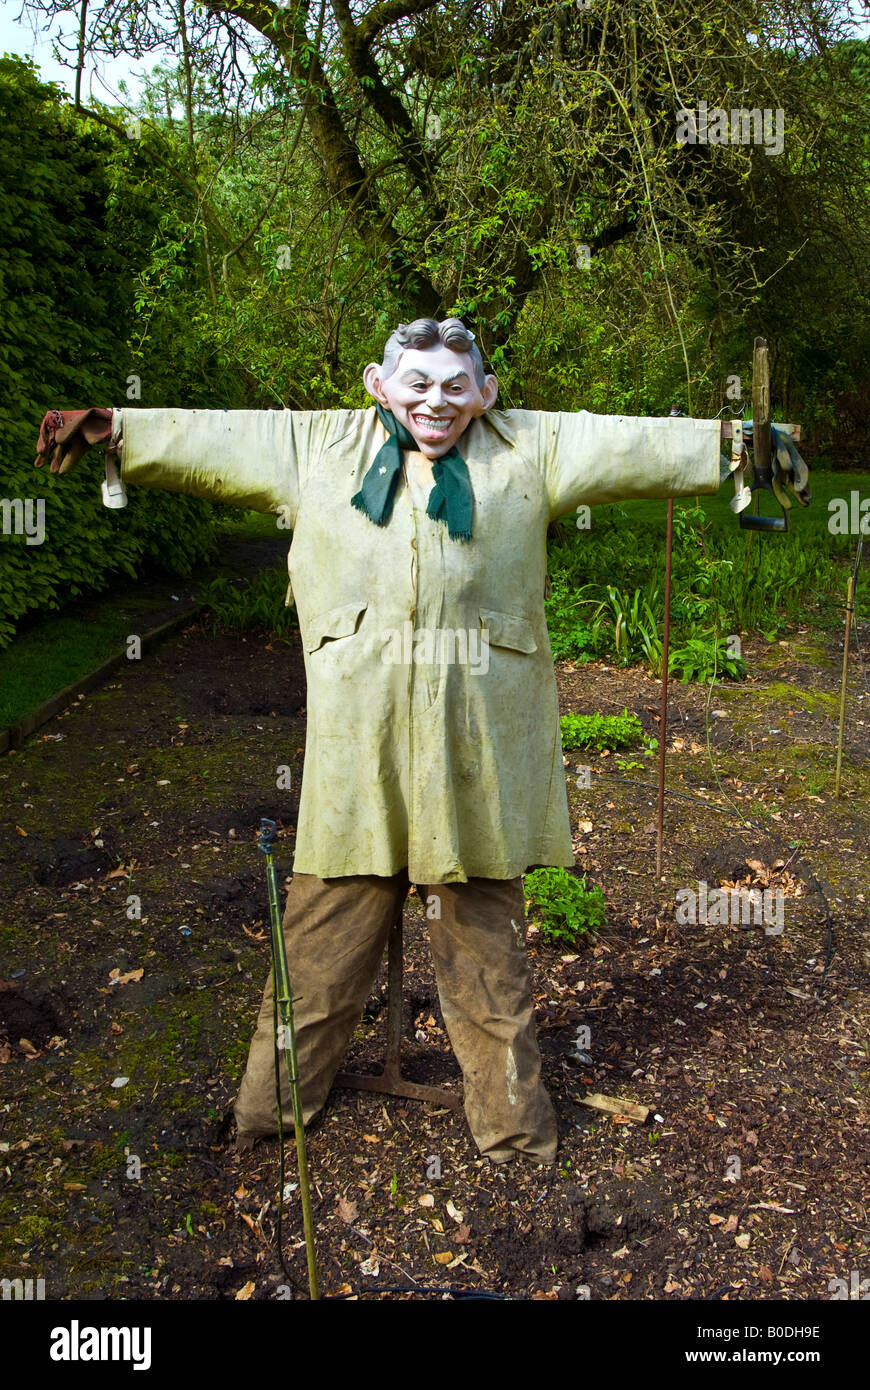 Un épouvantail avec Tony Blair face dans un jardin dans le Berkshire, Angleterre Banque D'Images